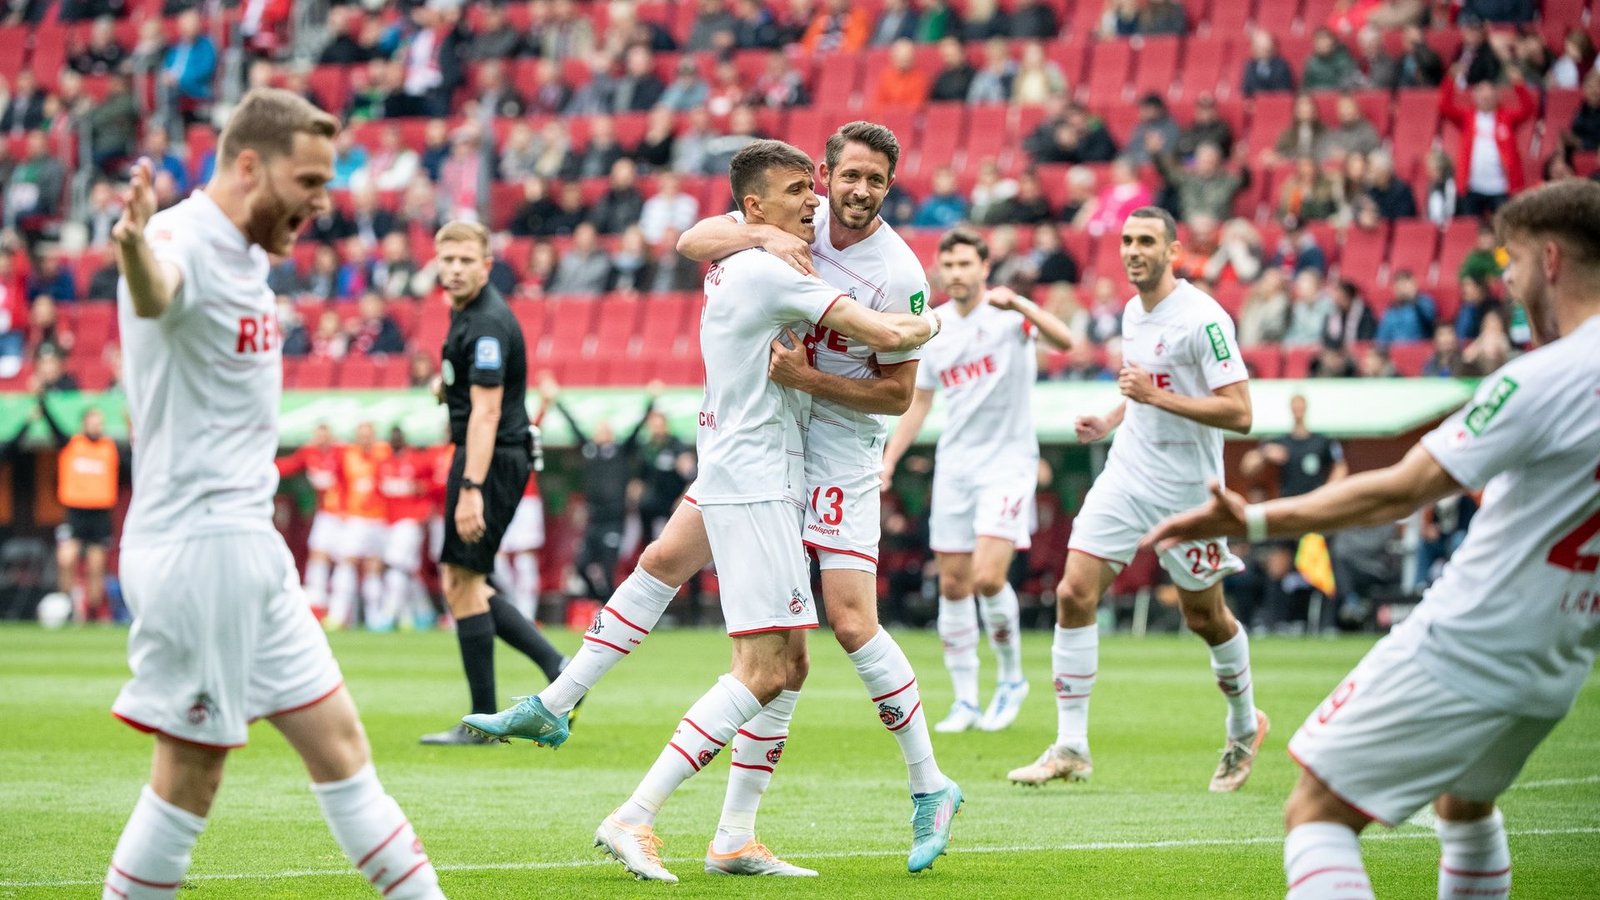 Der 1. FC Köln setzte sich deutlich in Augsburg durch.Foto: Matthias Balk/dpa